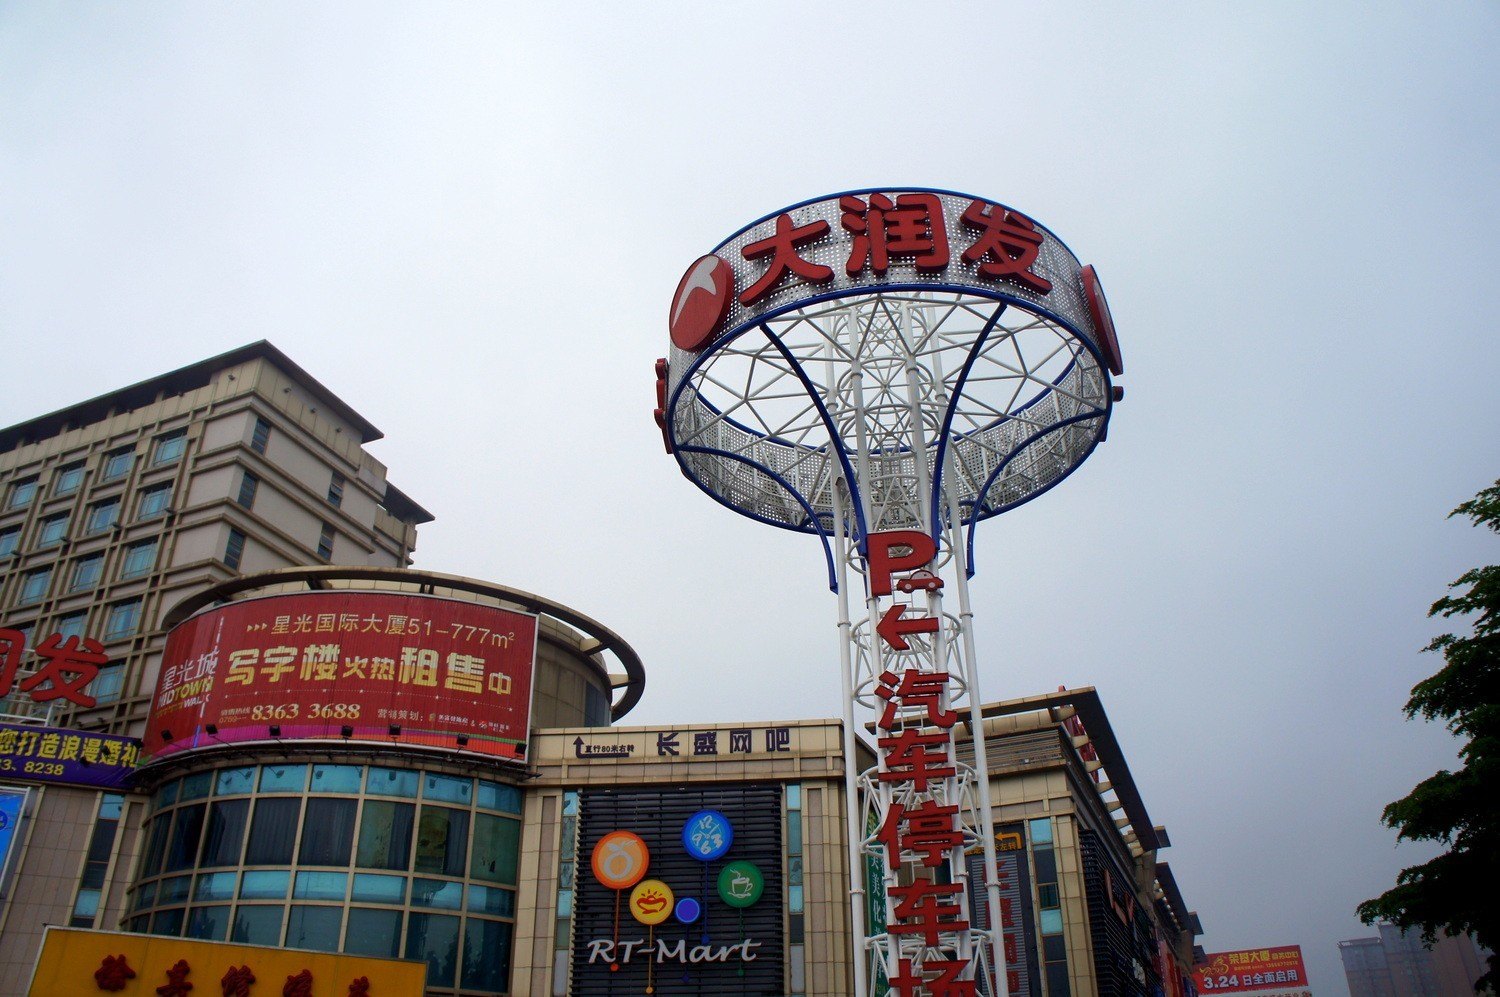 Dongguan city center in China - part of expat Dongguan life.